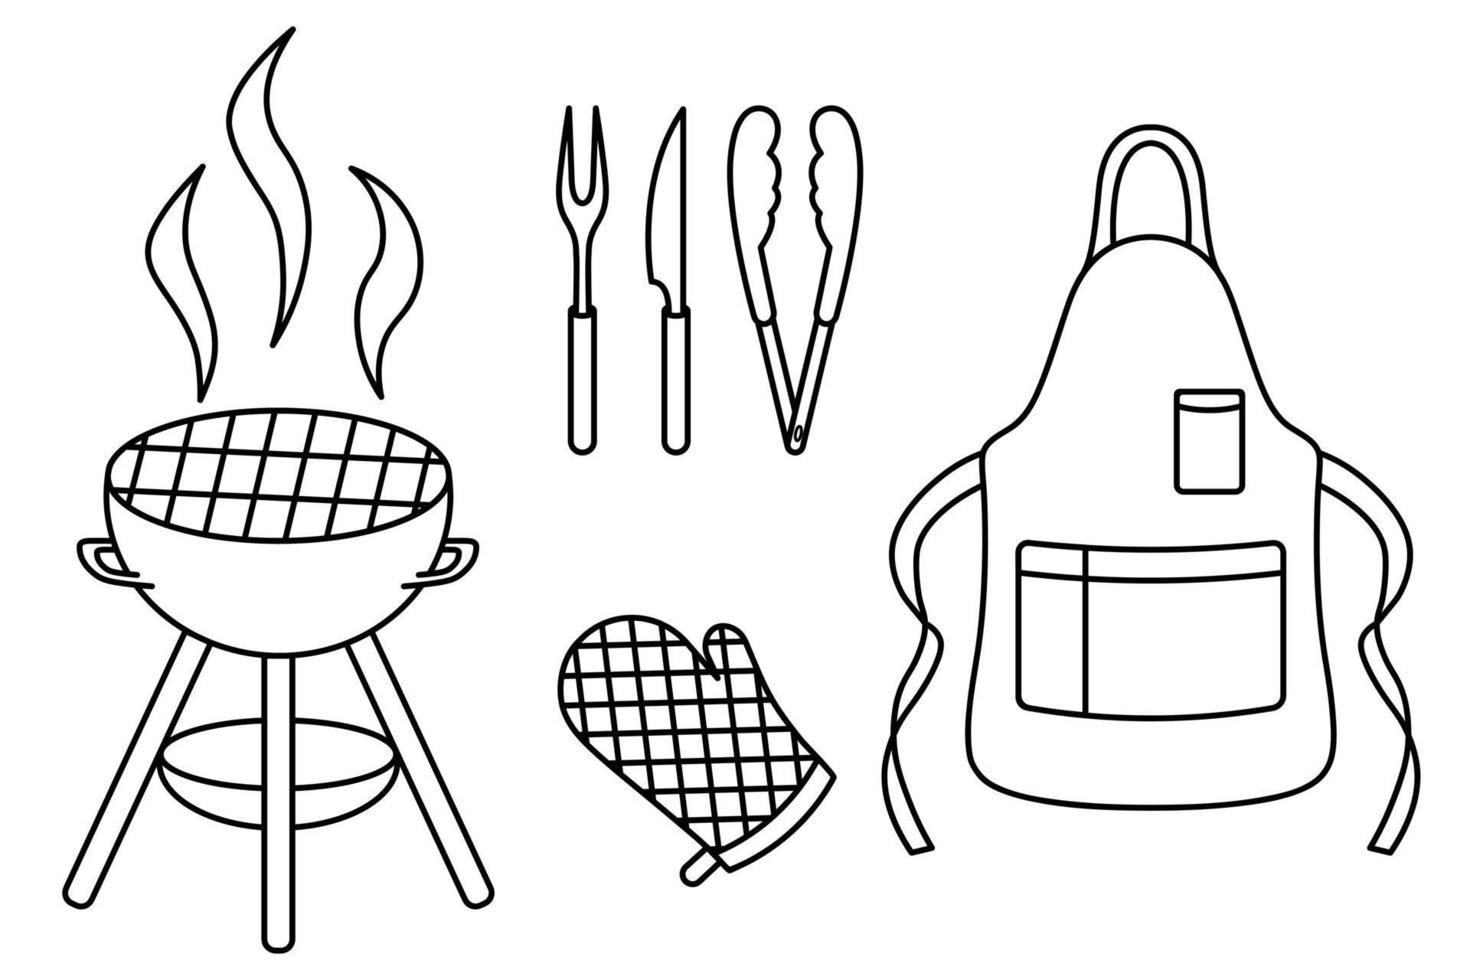 en uppsättning verktyg och overaller för att laga grillmat i doodle-stil vektor